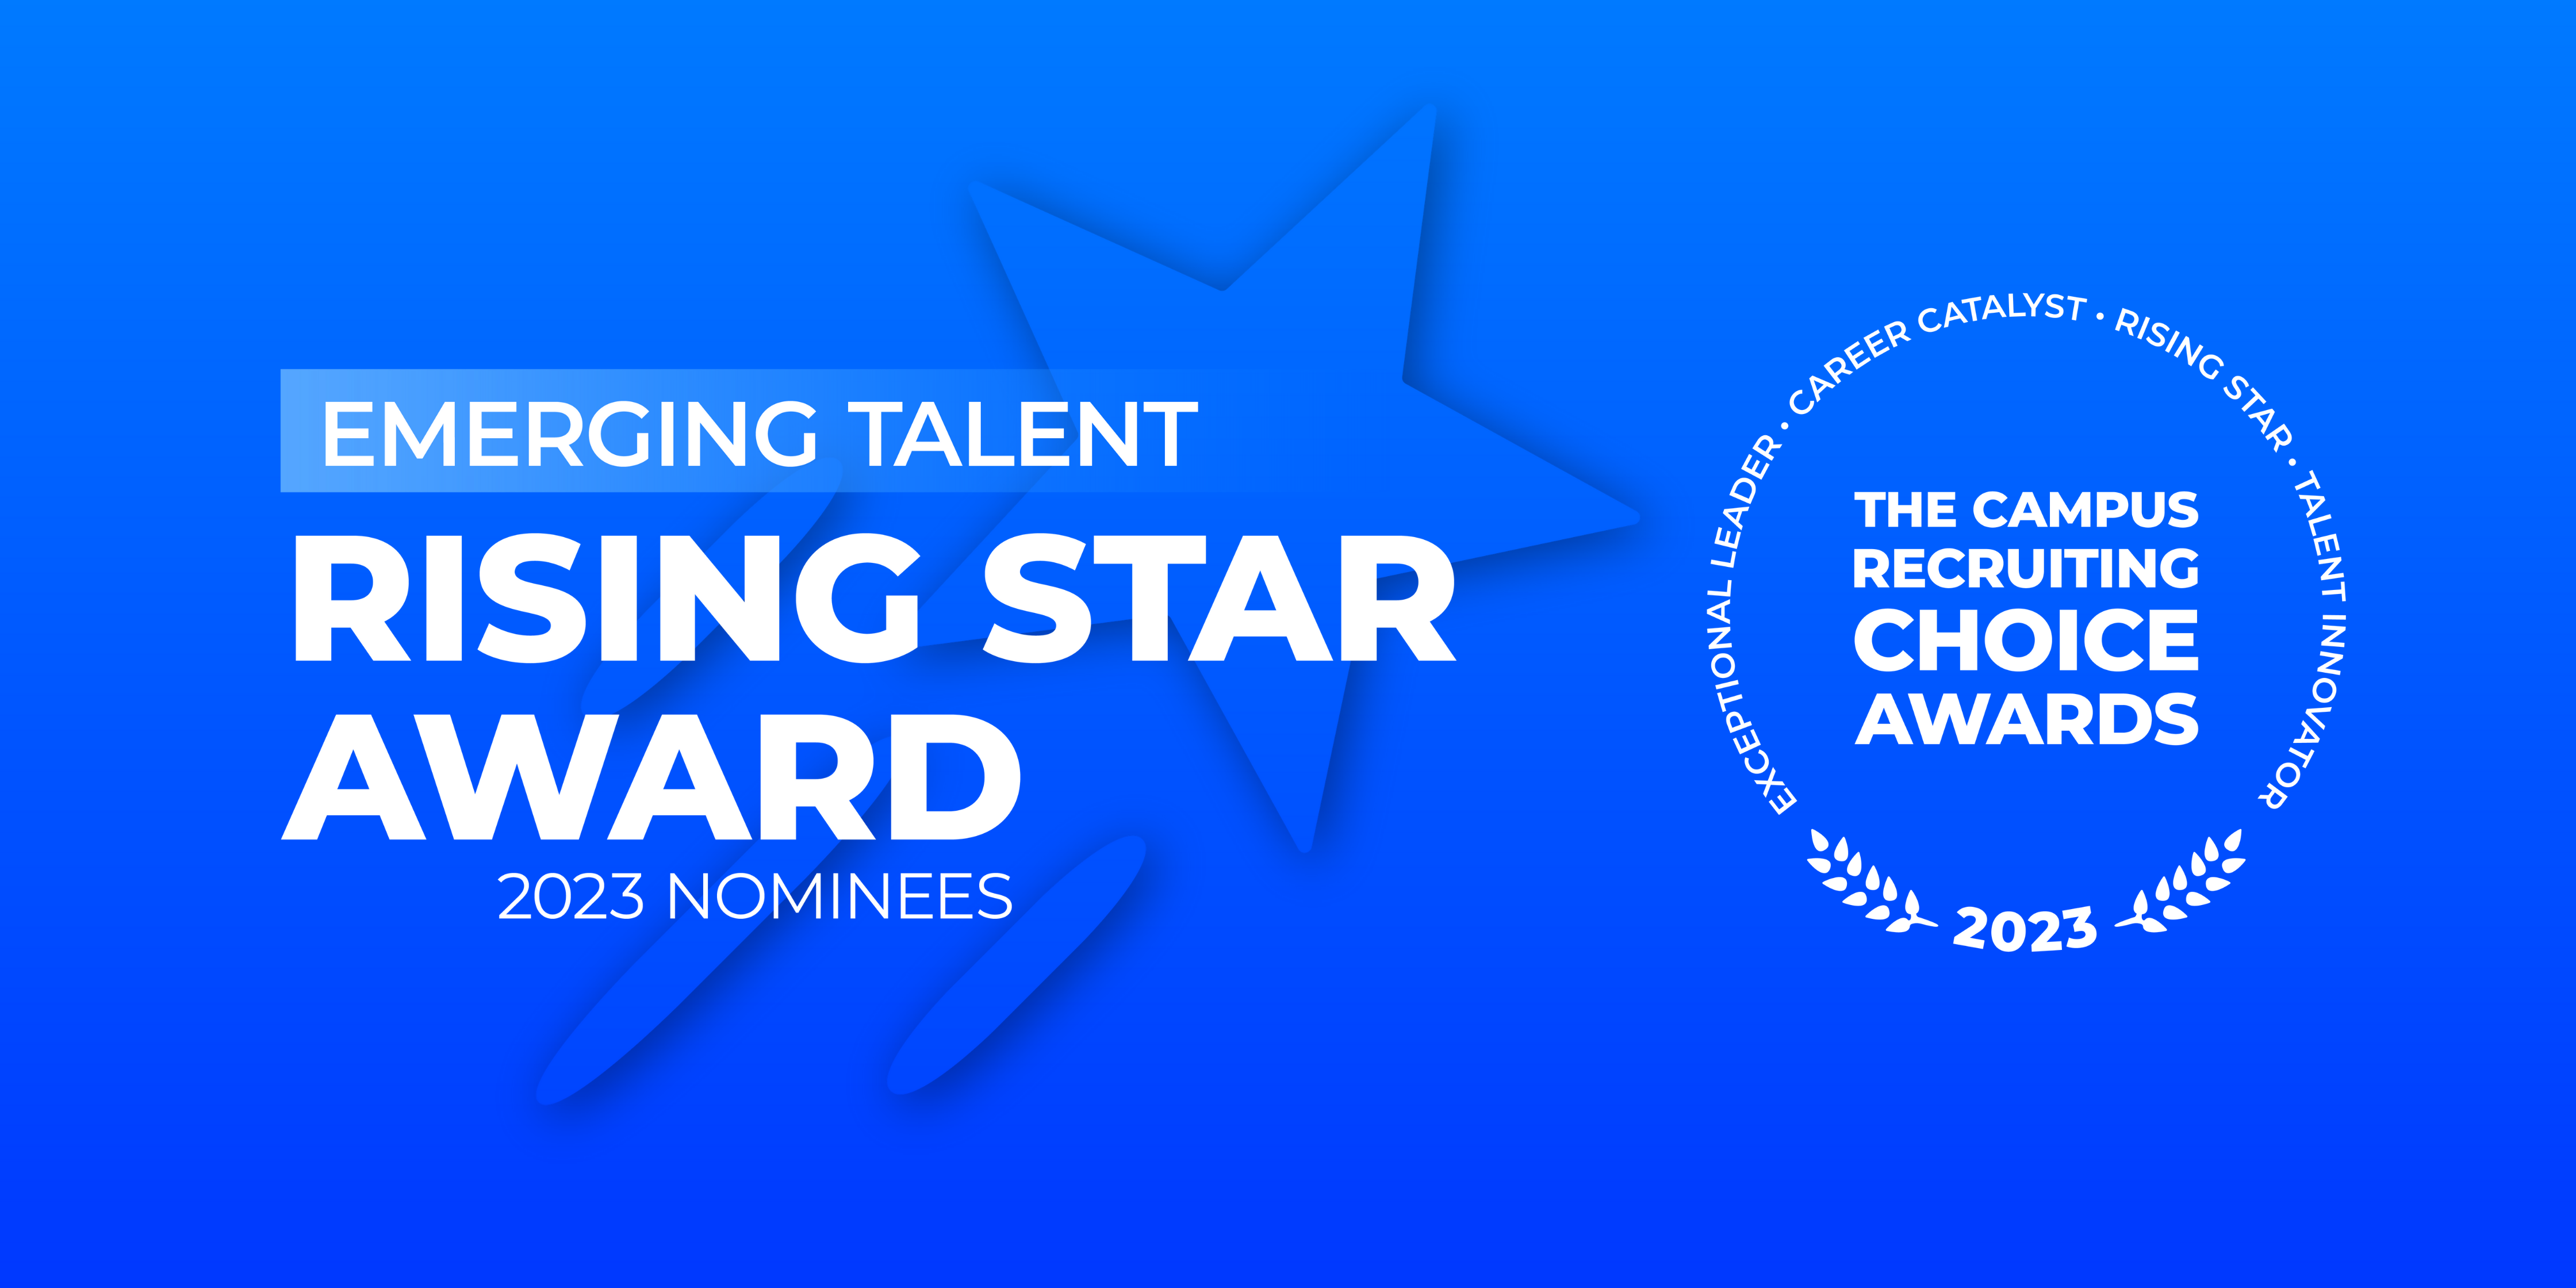 Rising Star Award - Emerging Talent - 2023 Nominees